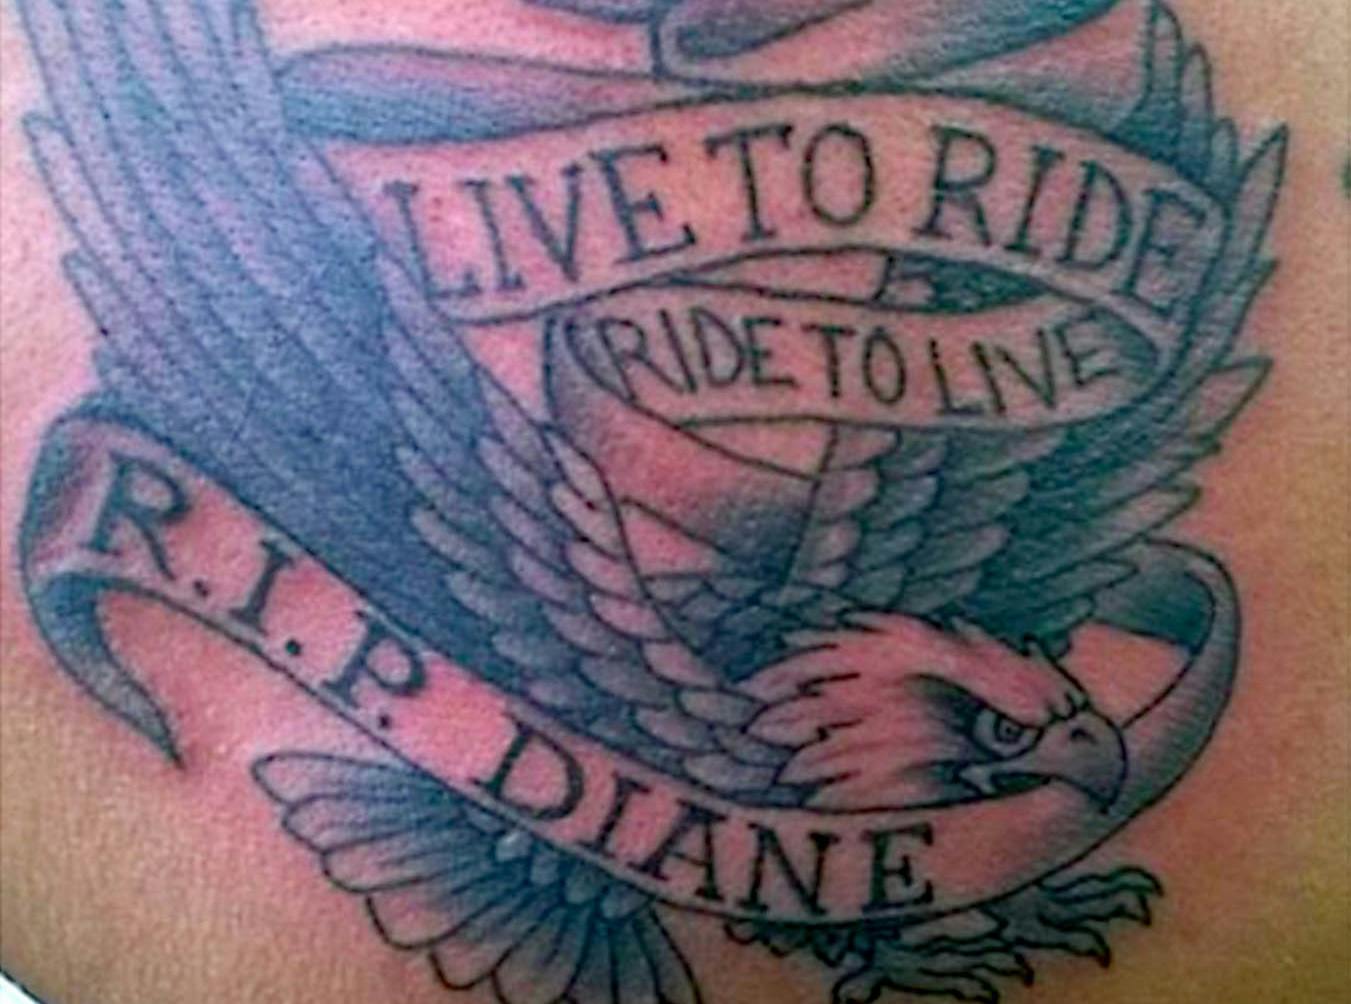 Angel wing tattoo Memorial tattoo Best friend Angel RIP  Rip tattoo  Remembrance tattoos Angel wings tattoo